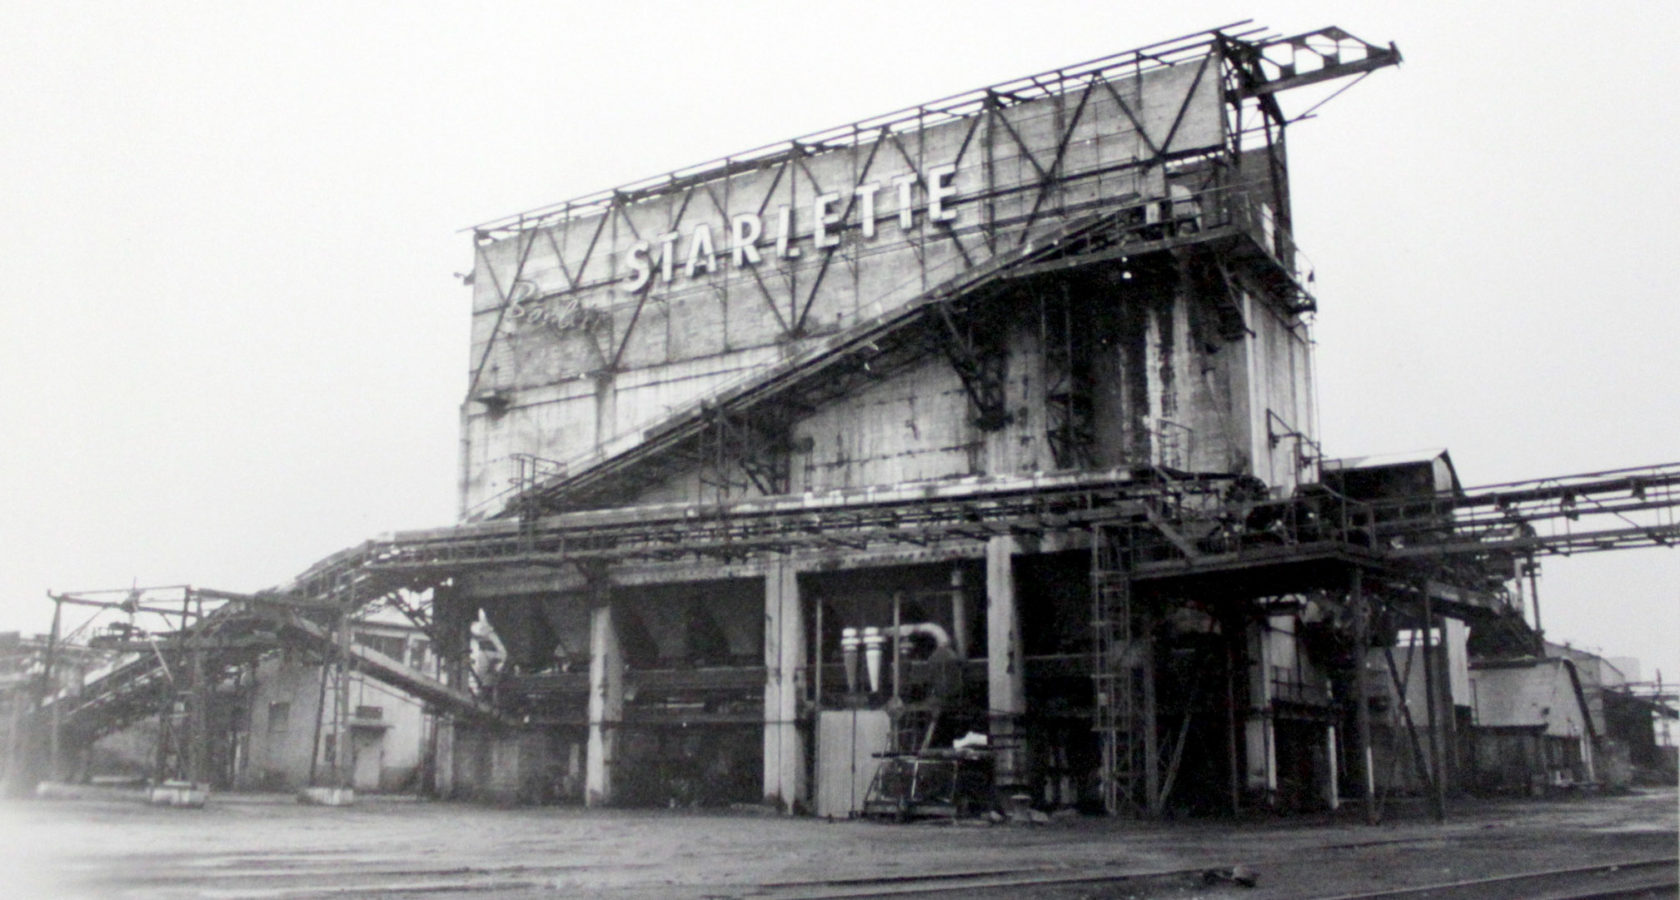 Starlette coal pellet factory in the 20th century. Photo credit: Inventaire de la région/Patrimoine d'Alsace